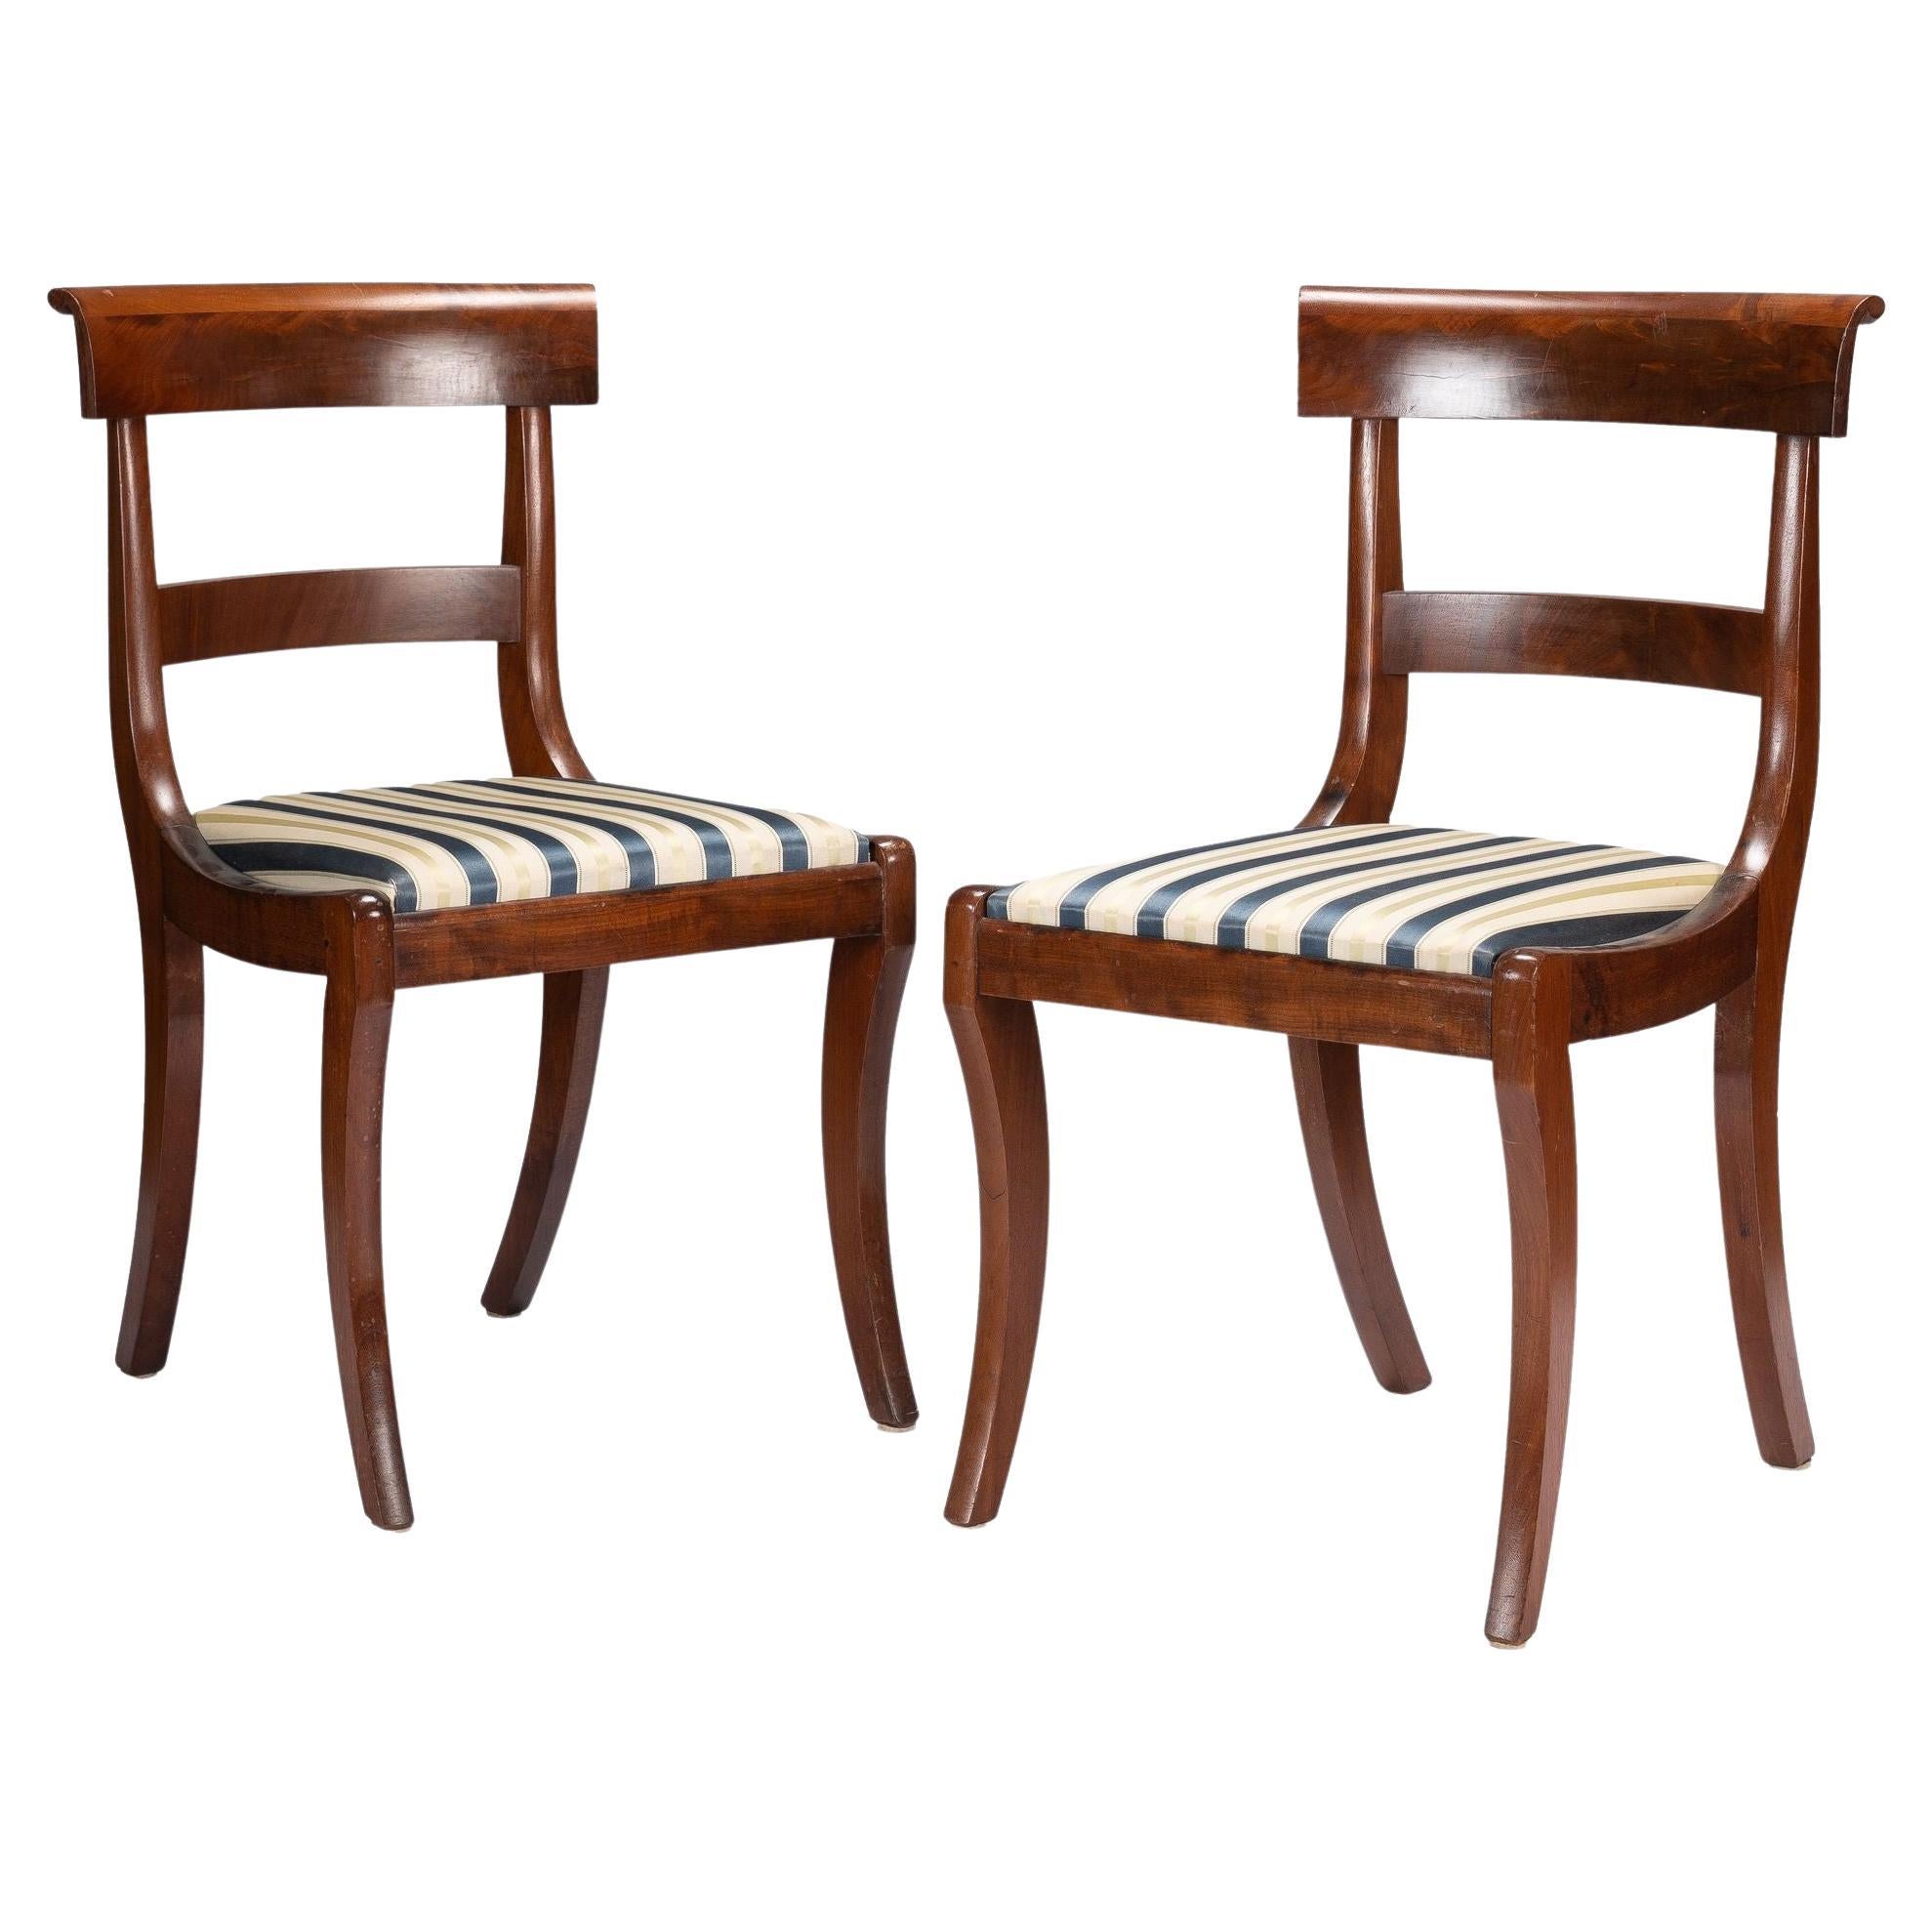 Paar New Yorker Klismos-Beistellstühle aus Mahagoni mit Schlickersitz, 1825